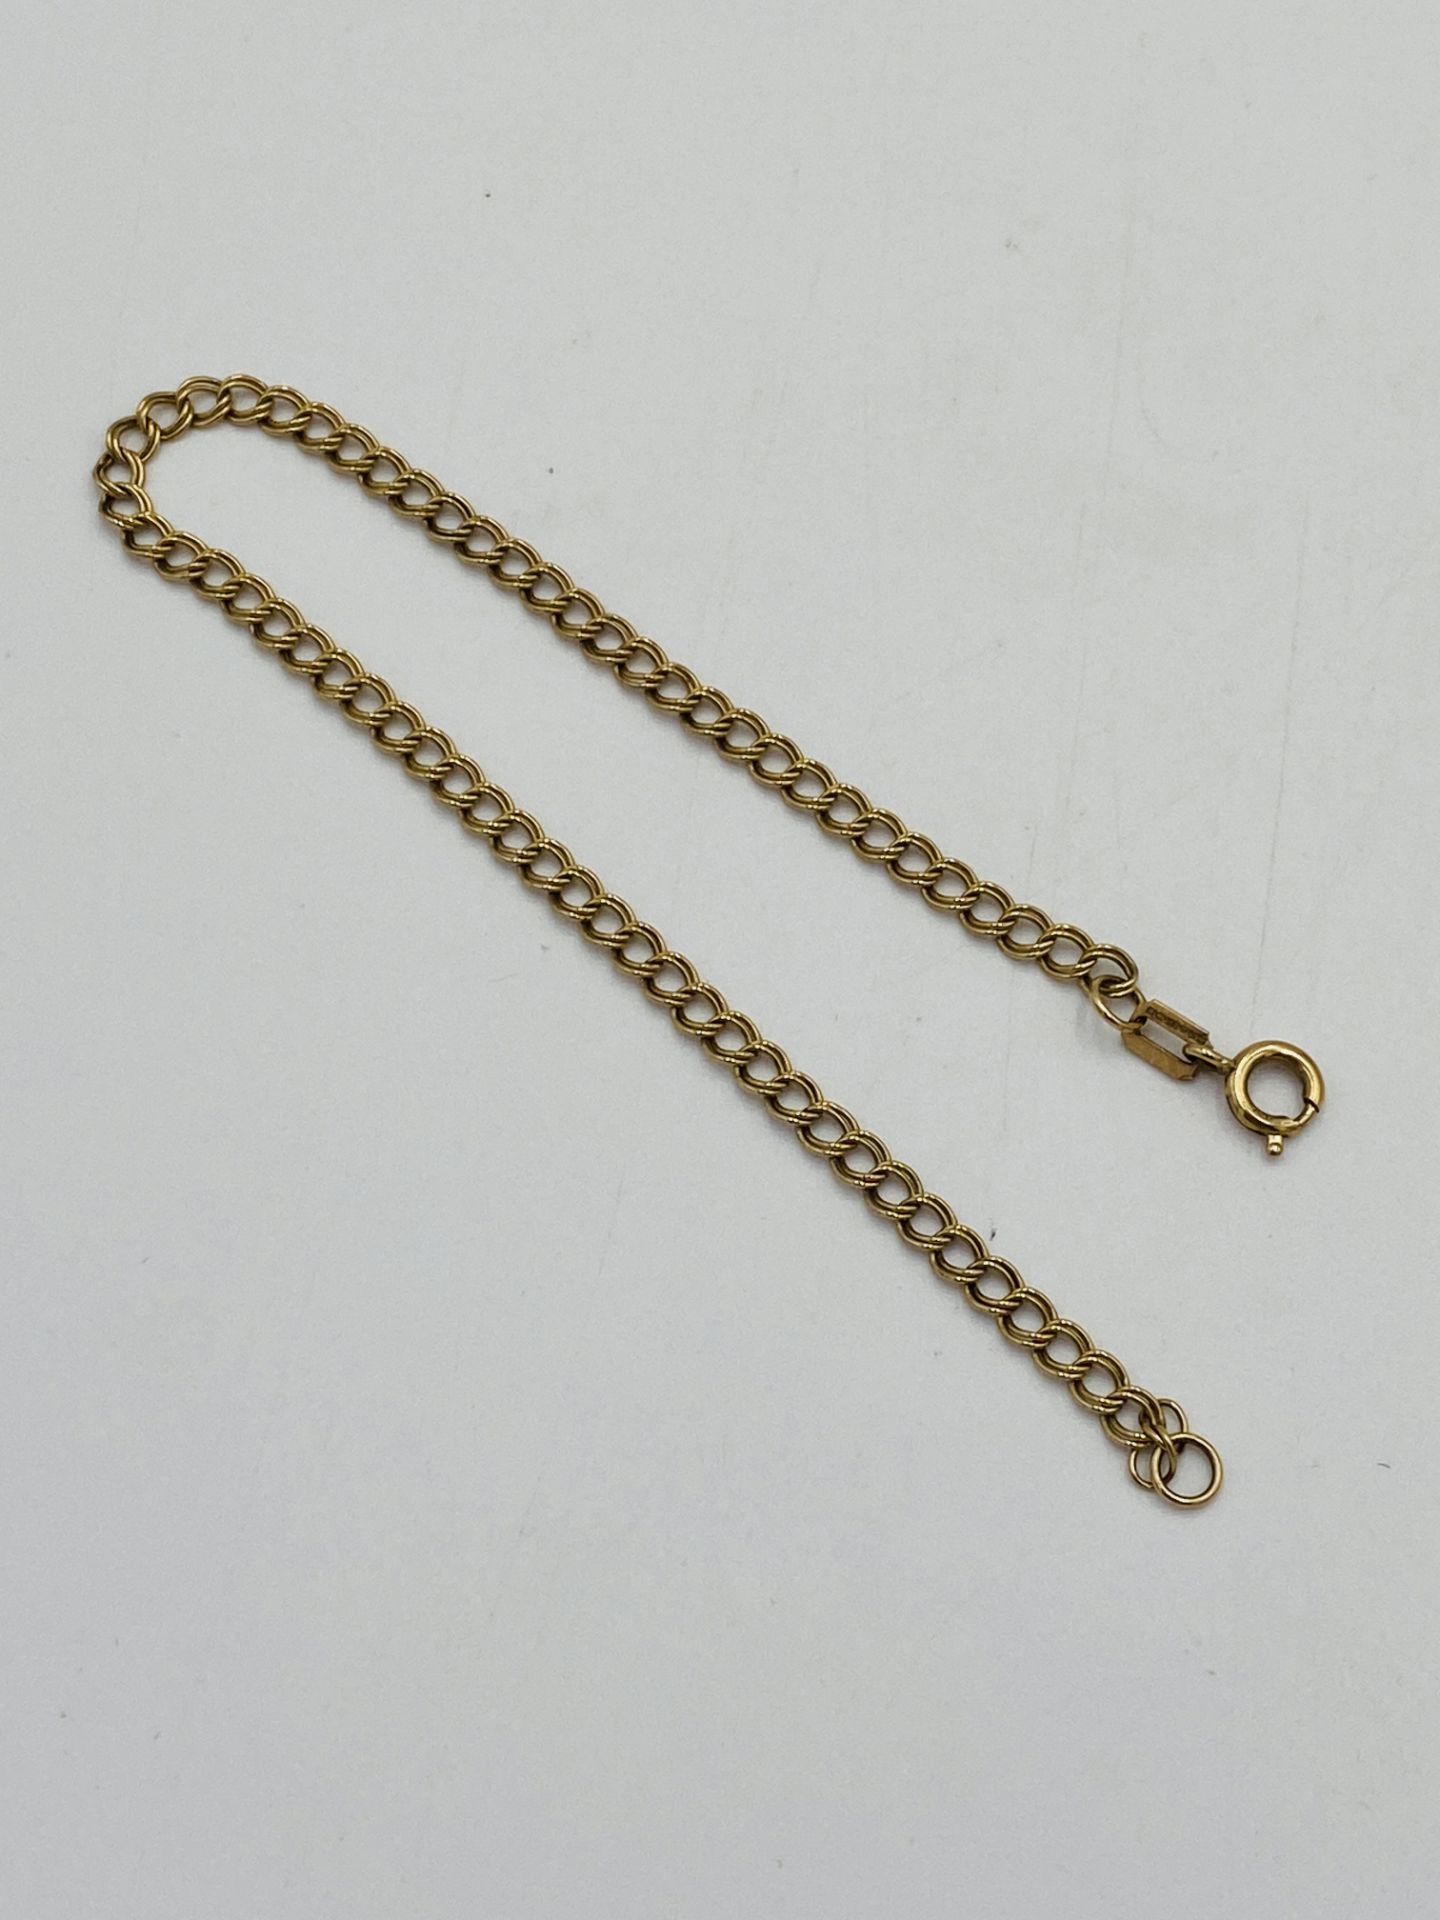 9ct gold bracelet - Image 2 of 2